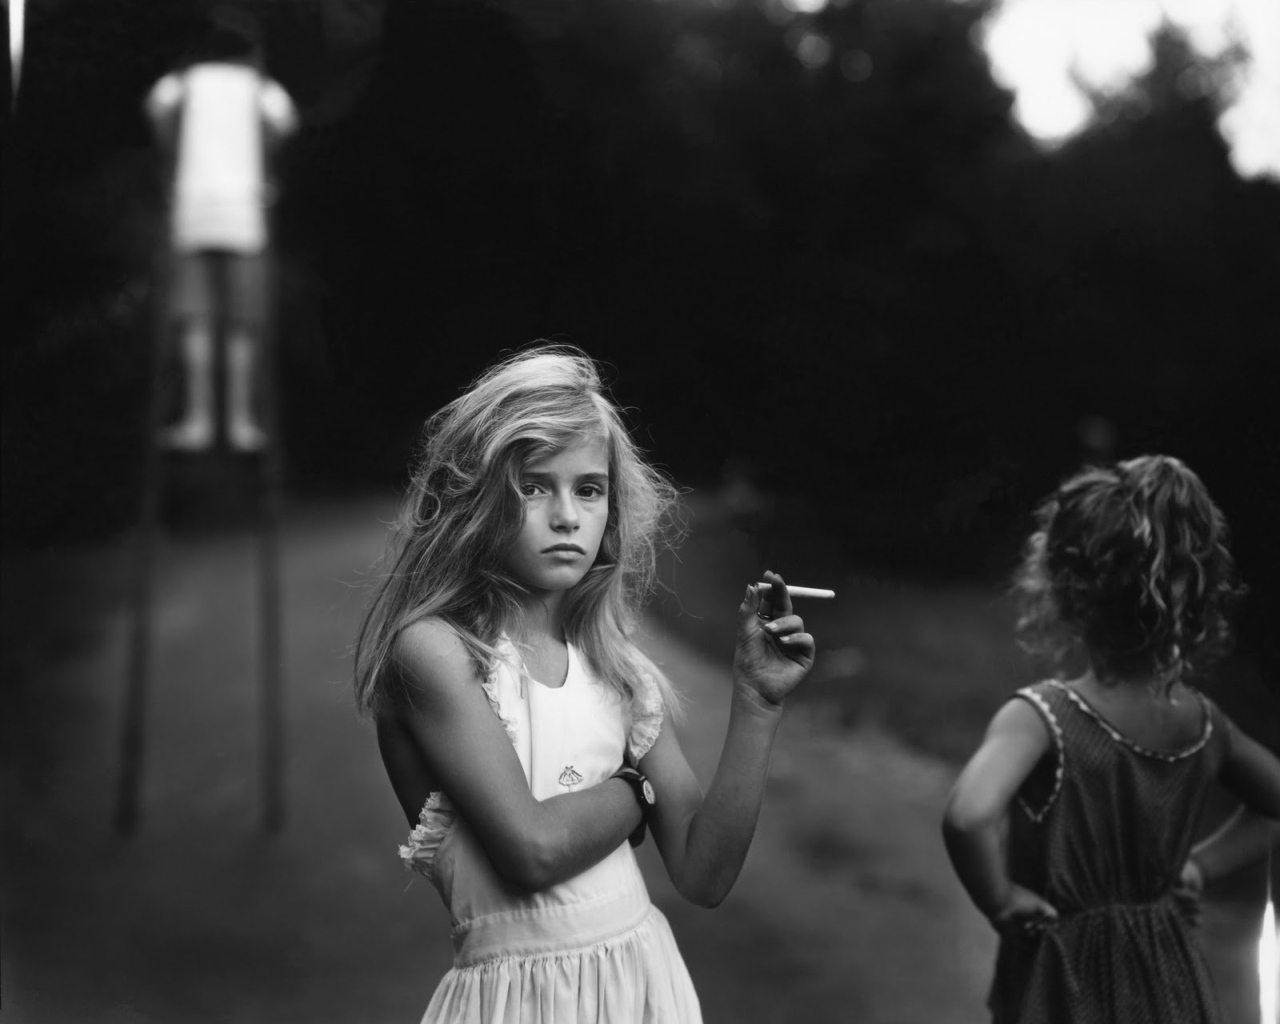 Фотография девочки с сигаретой